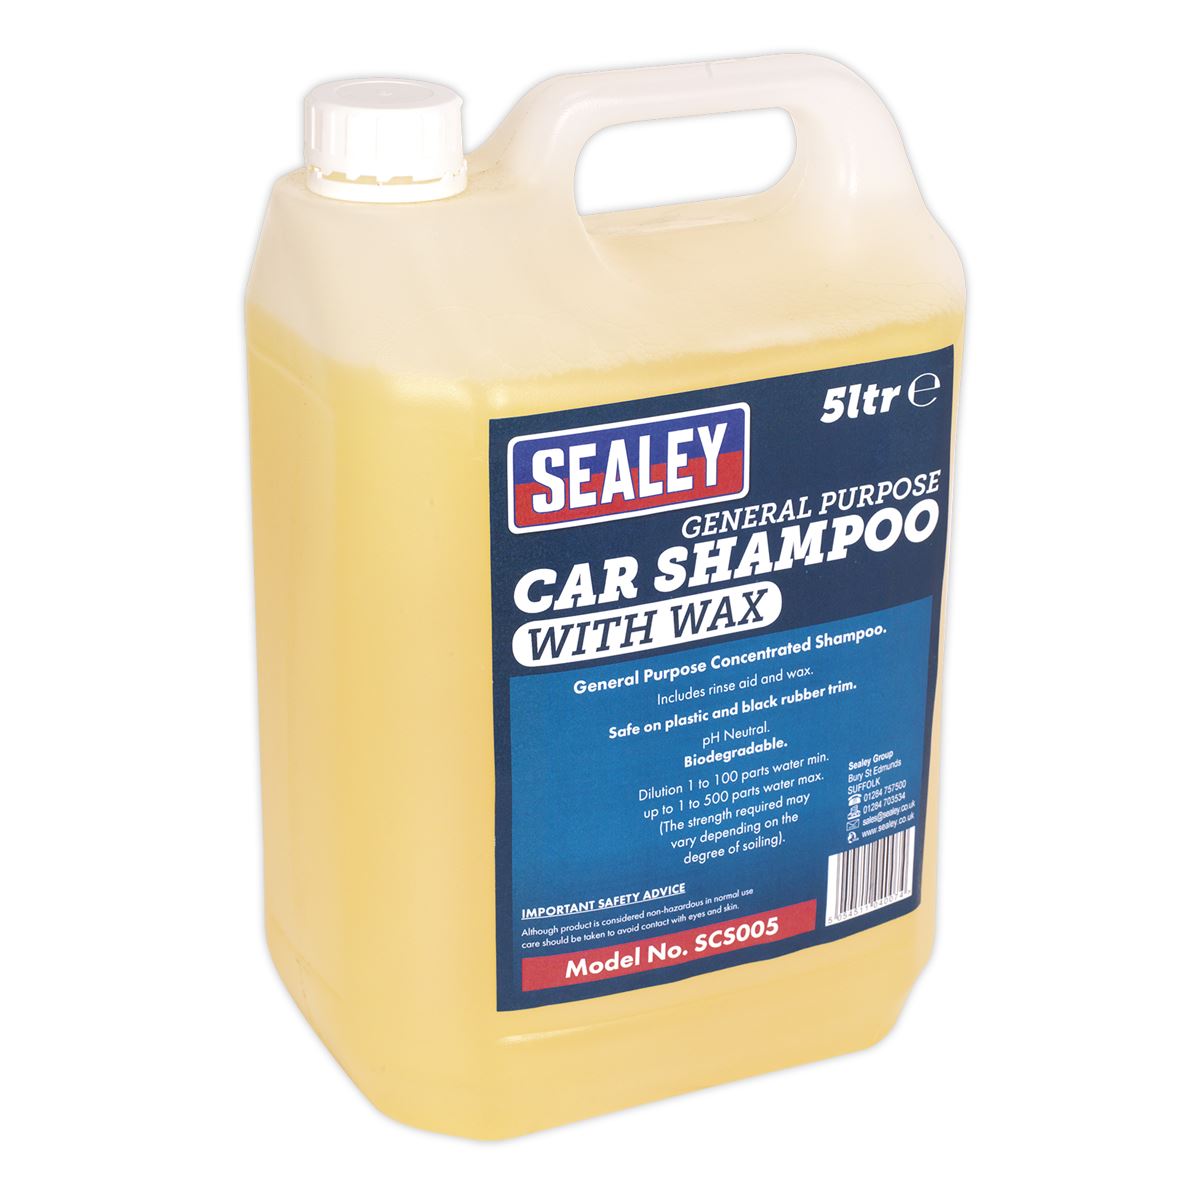 Sealey Car Shampoo with Wax 5L